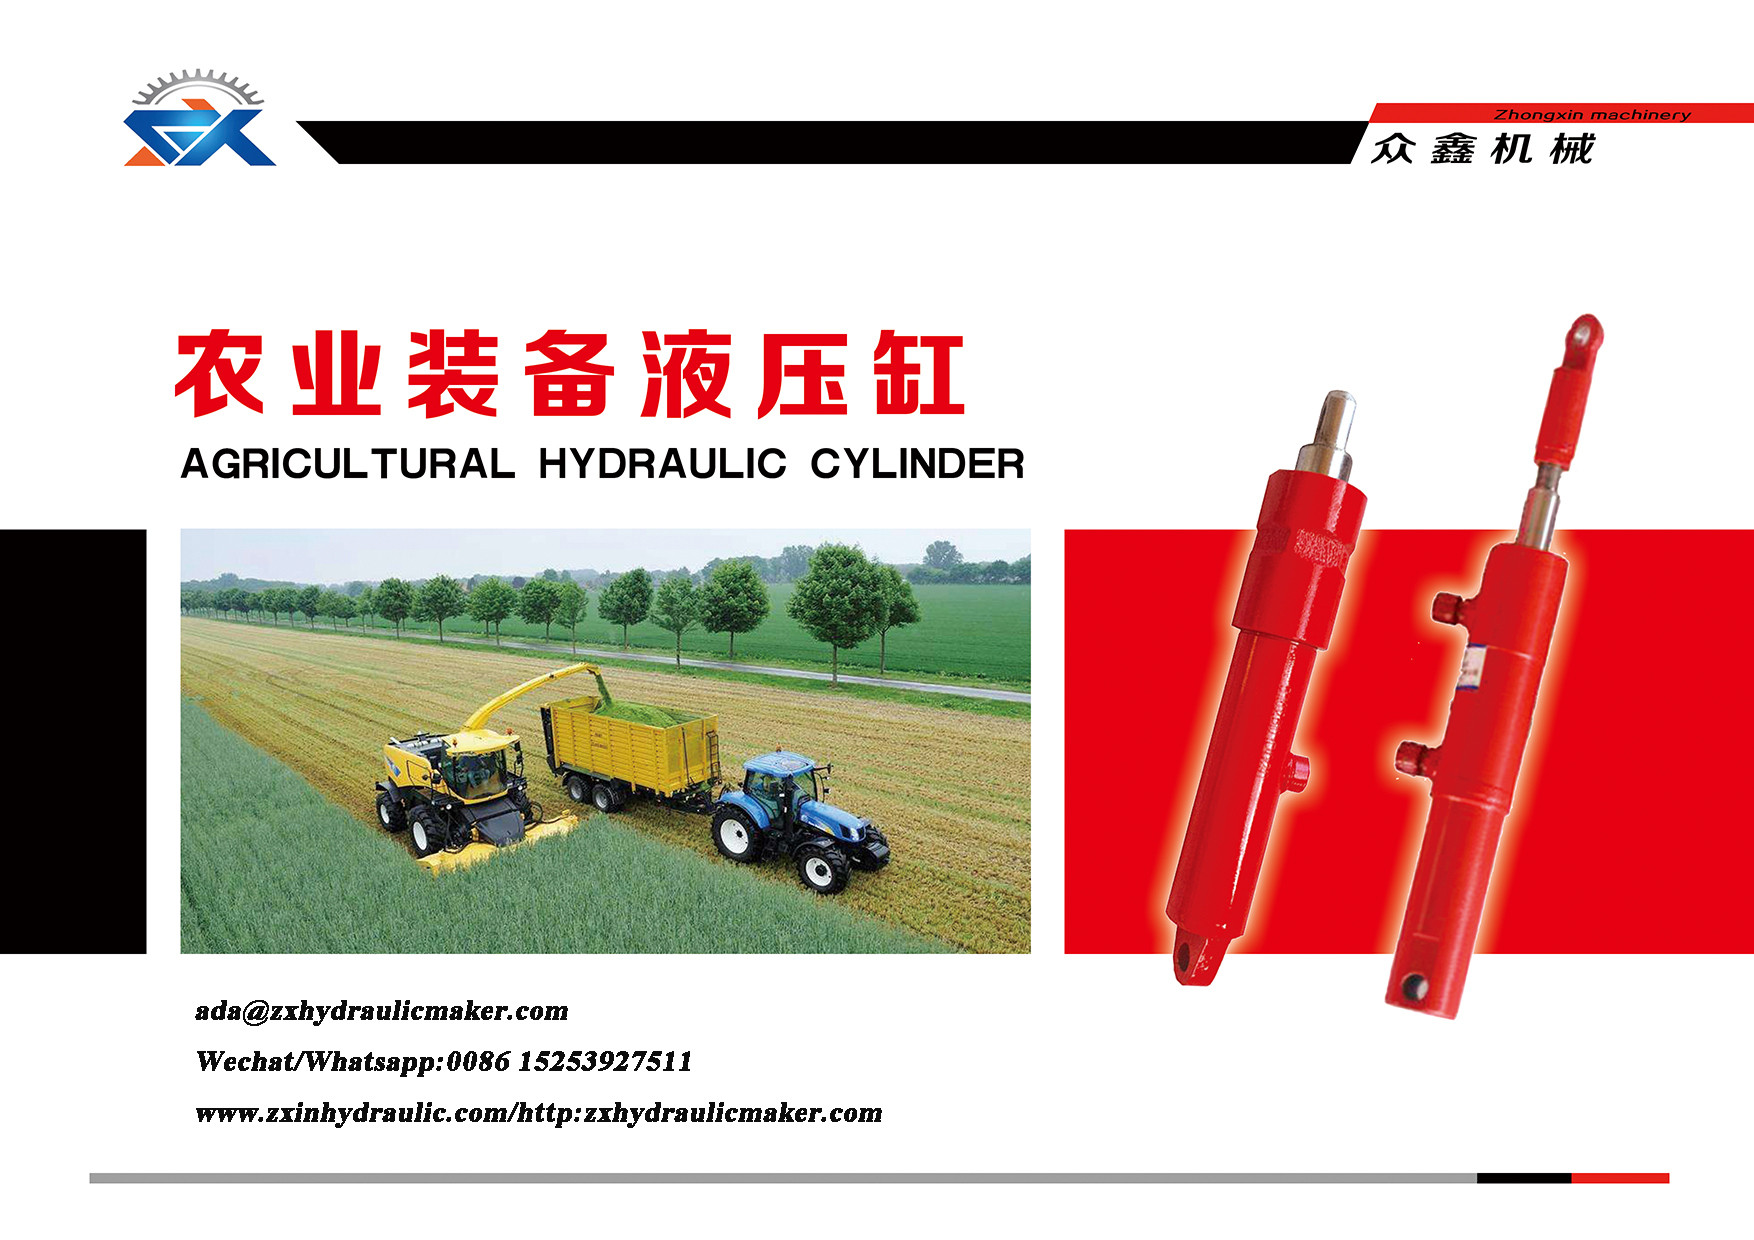 AG Hydraulic Cylinder